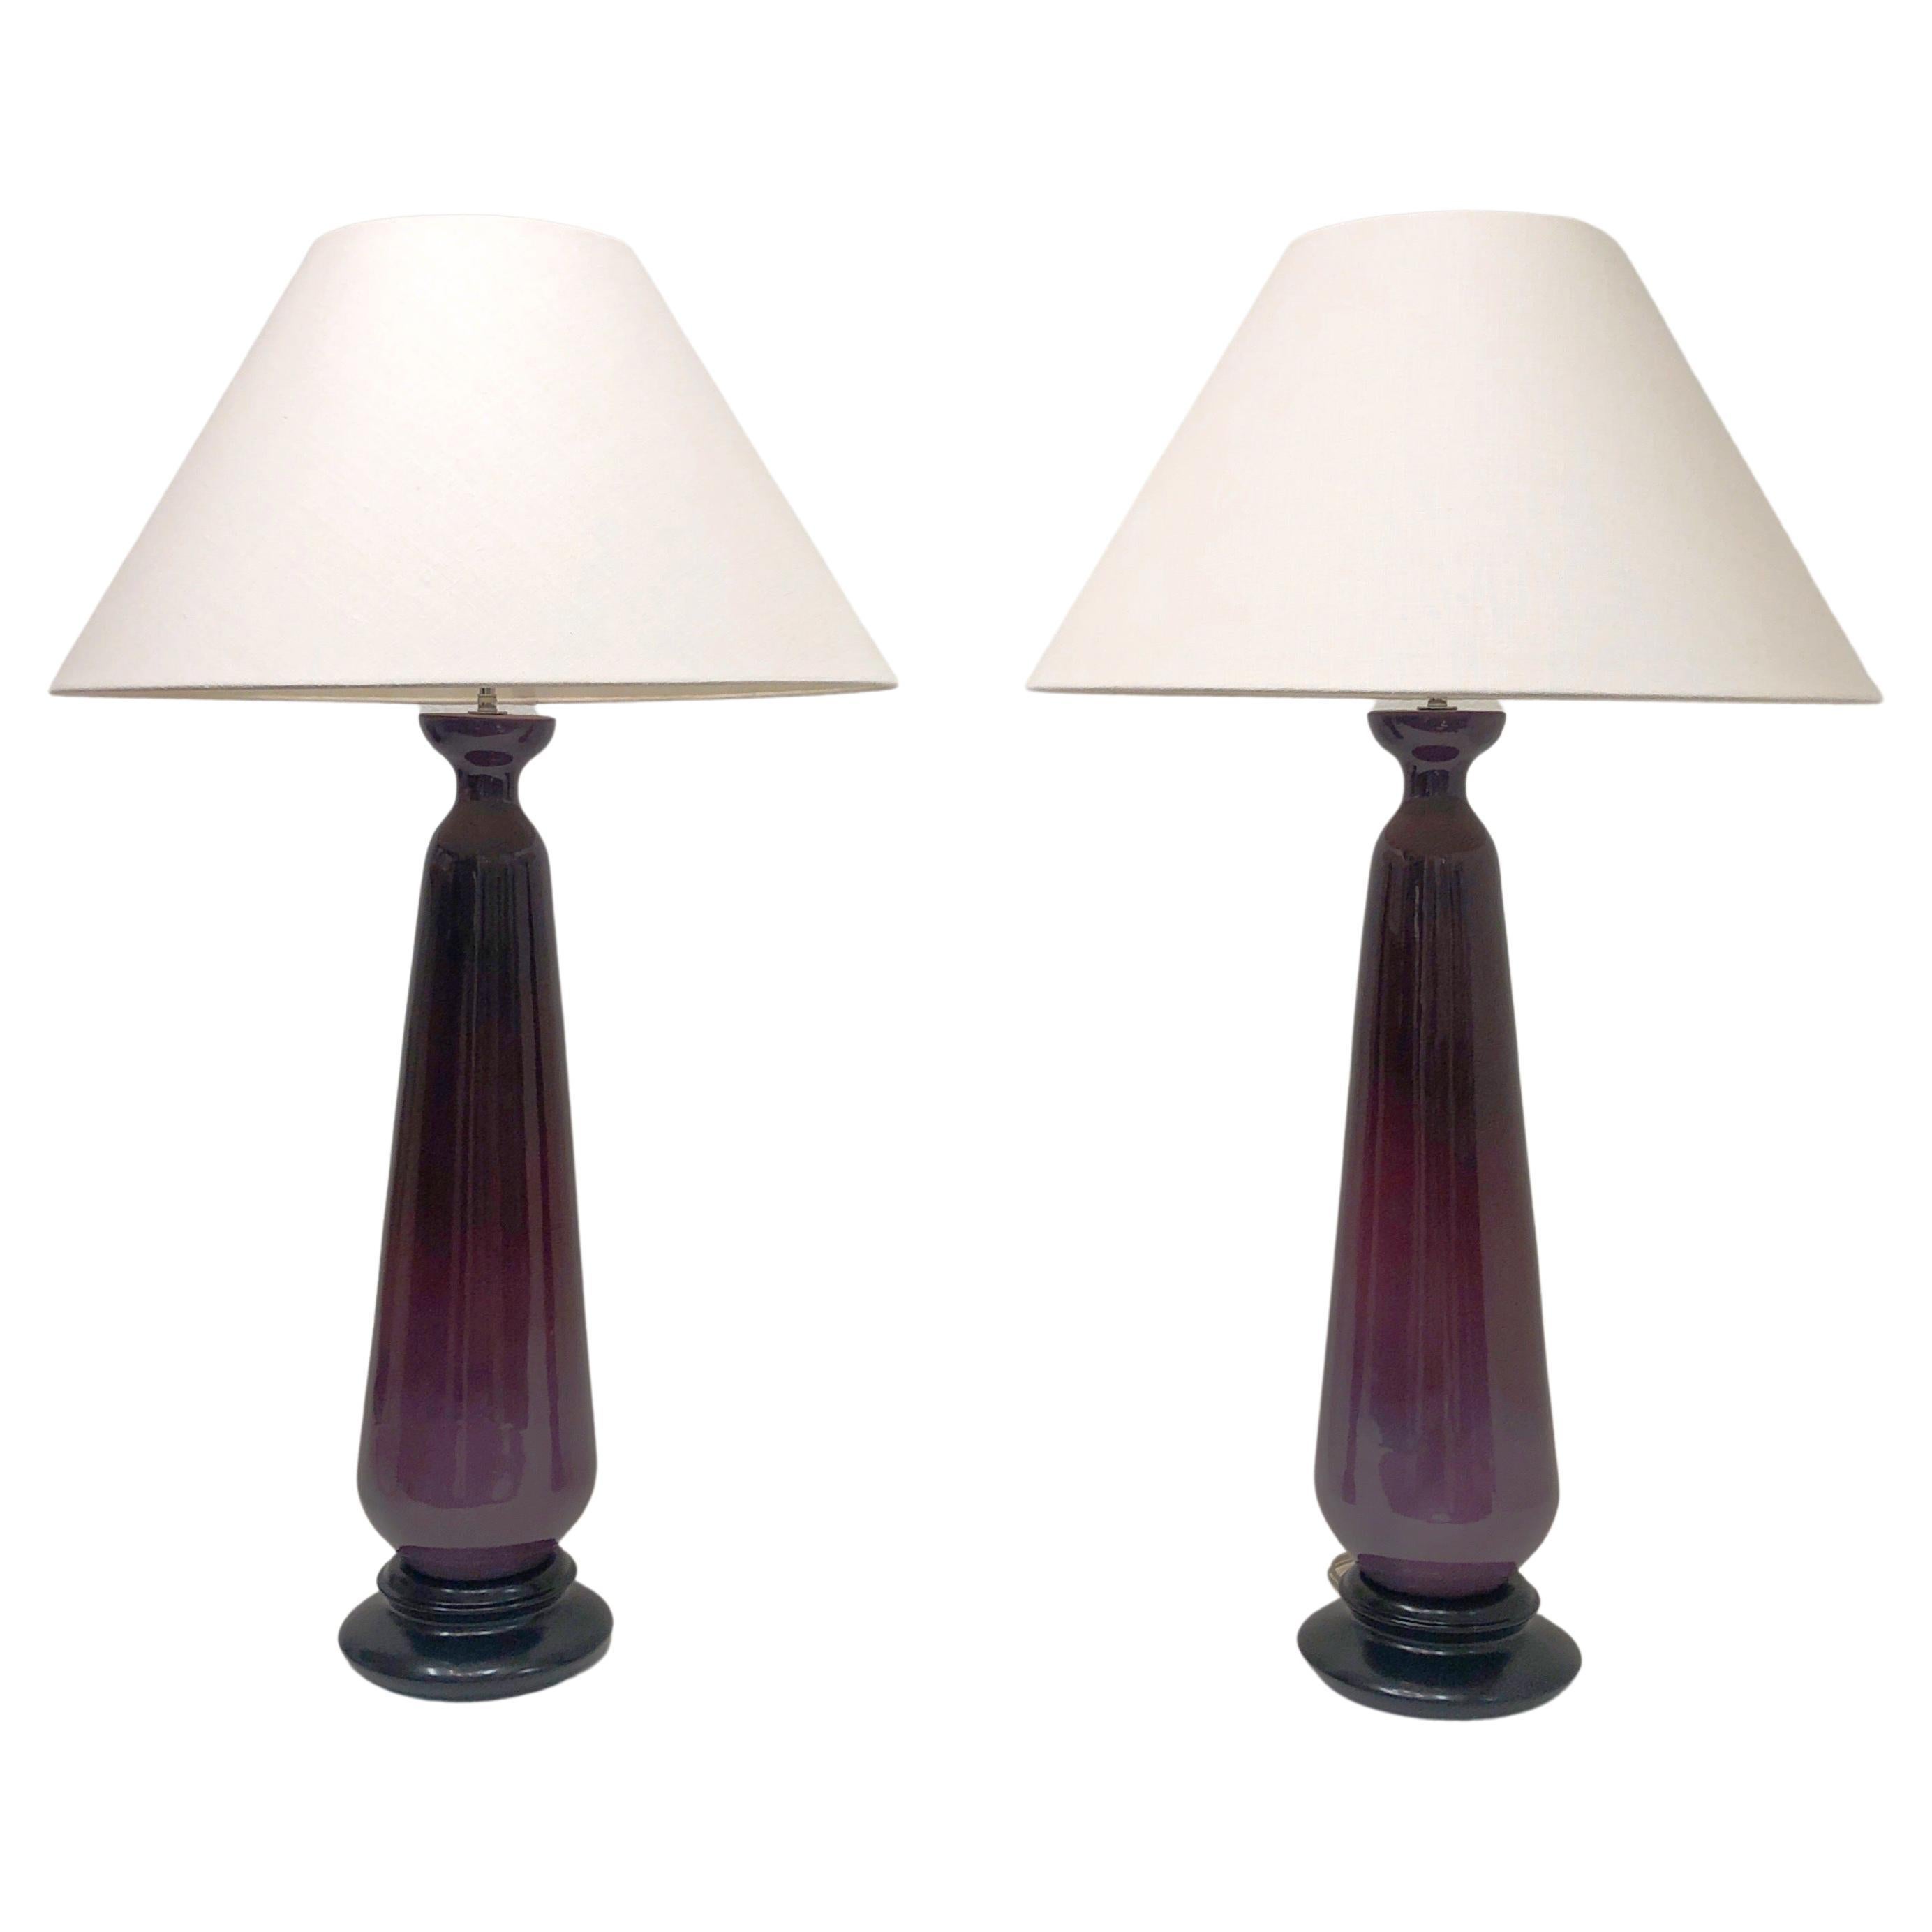 Großes Paar lila glasierter Keramik und Nickel-Tischlampen